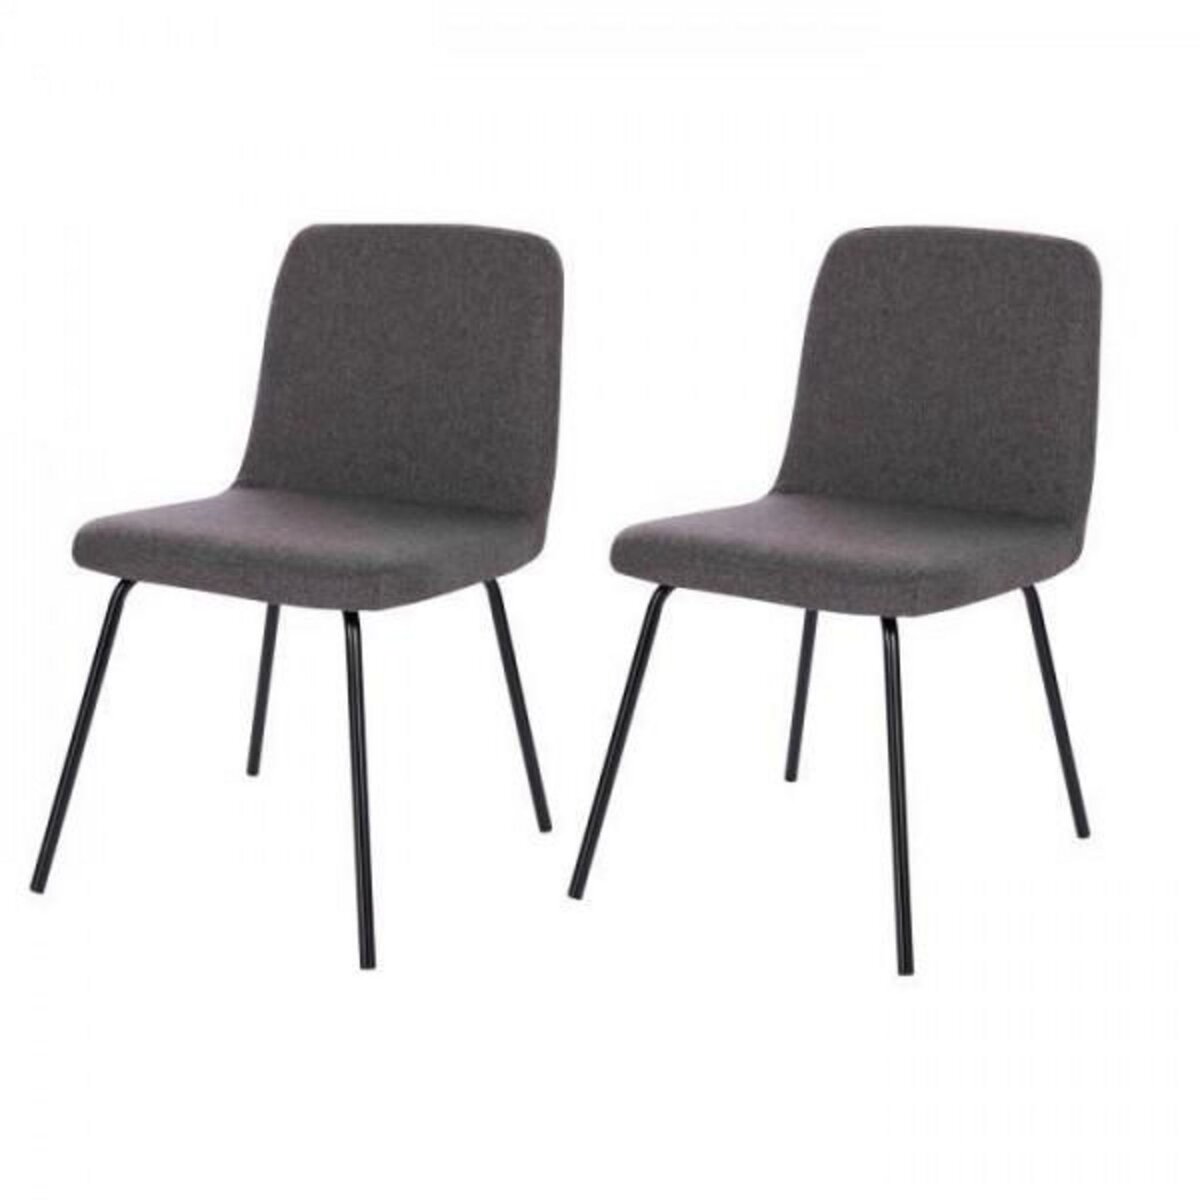 MARKET24 Lot de 2 chaises - Pieds en métal - Tissu Gris - L 44 x P 56 x H 80 cm